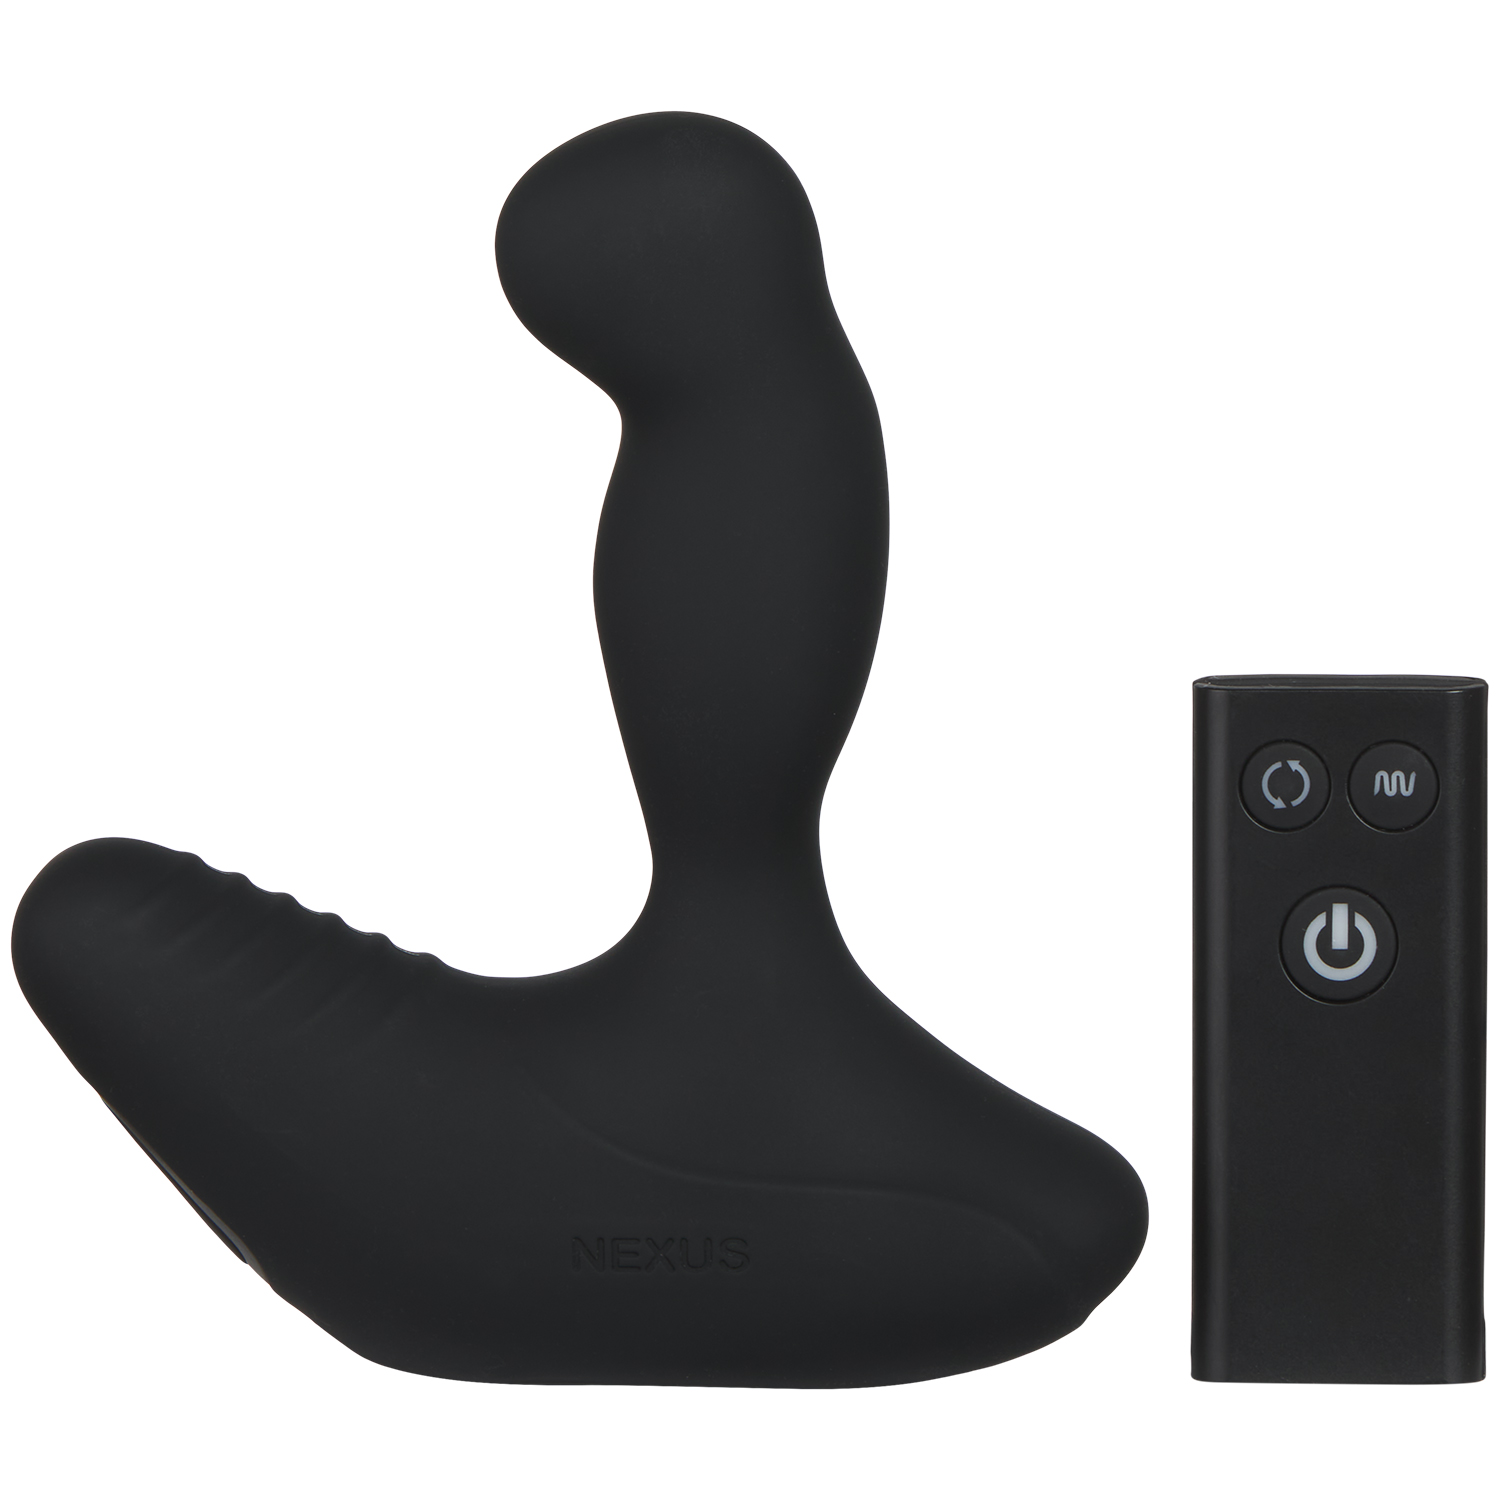 Nexus Revo Stealth Prostata Massage Vibrator - Black